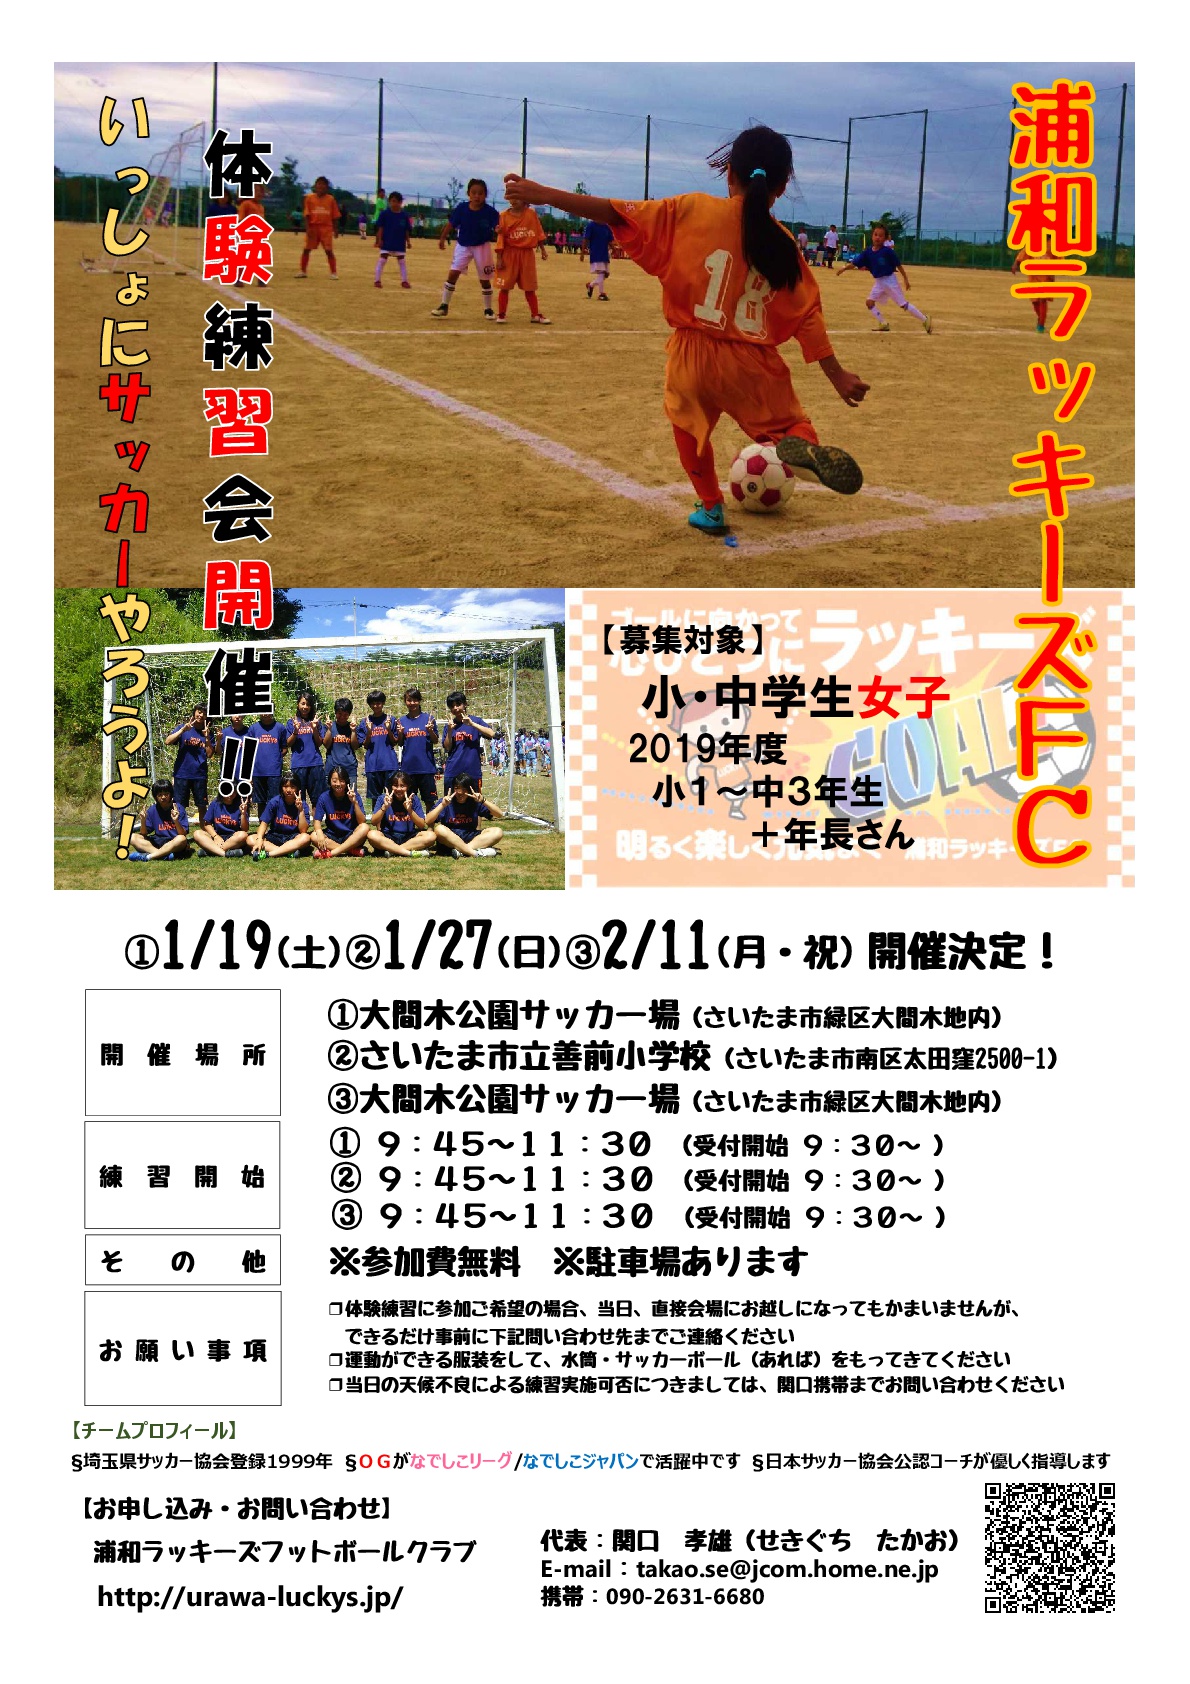 クラブ活動 Com メンバー募集 対戦相手募集 イベント 大会 クラブを探す 浦和ラッキーズｆｃ U 12 小学生女子サッカー